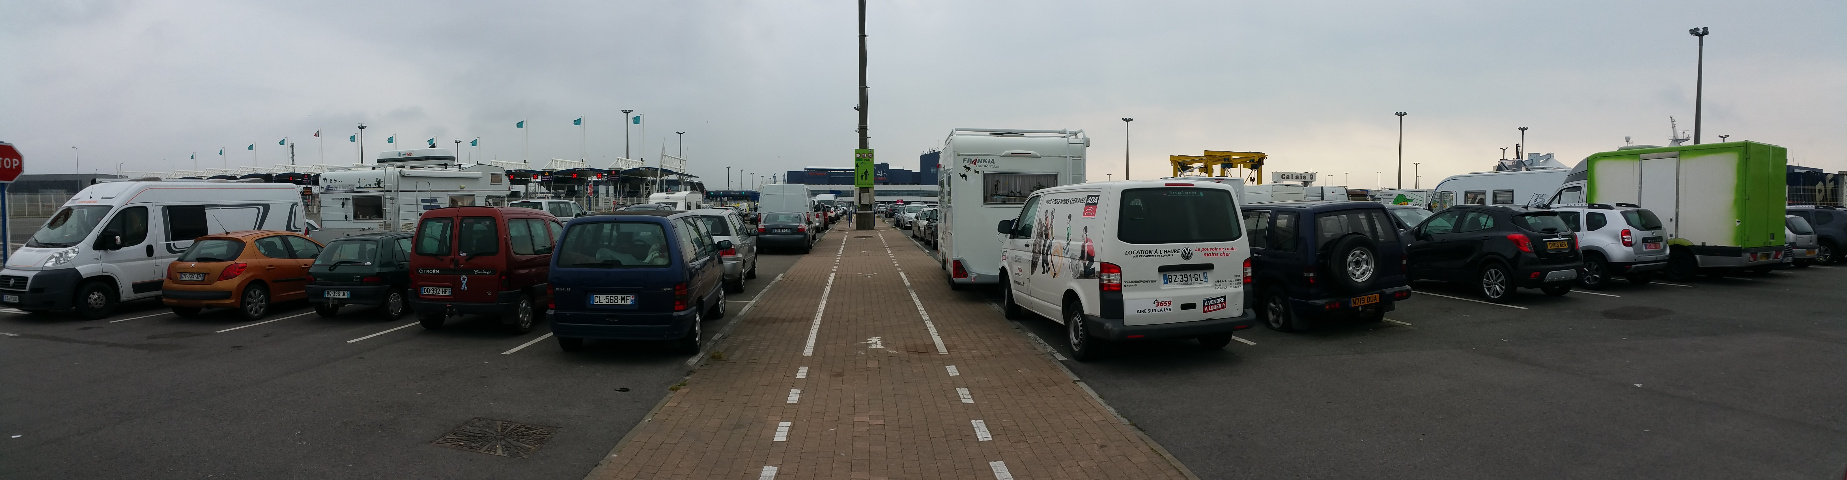 Park- und bernachtungsplatz am Hafen in Calais mit Blick Richtung Terminal.